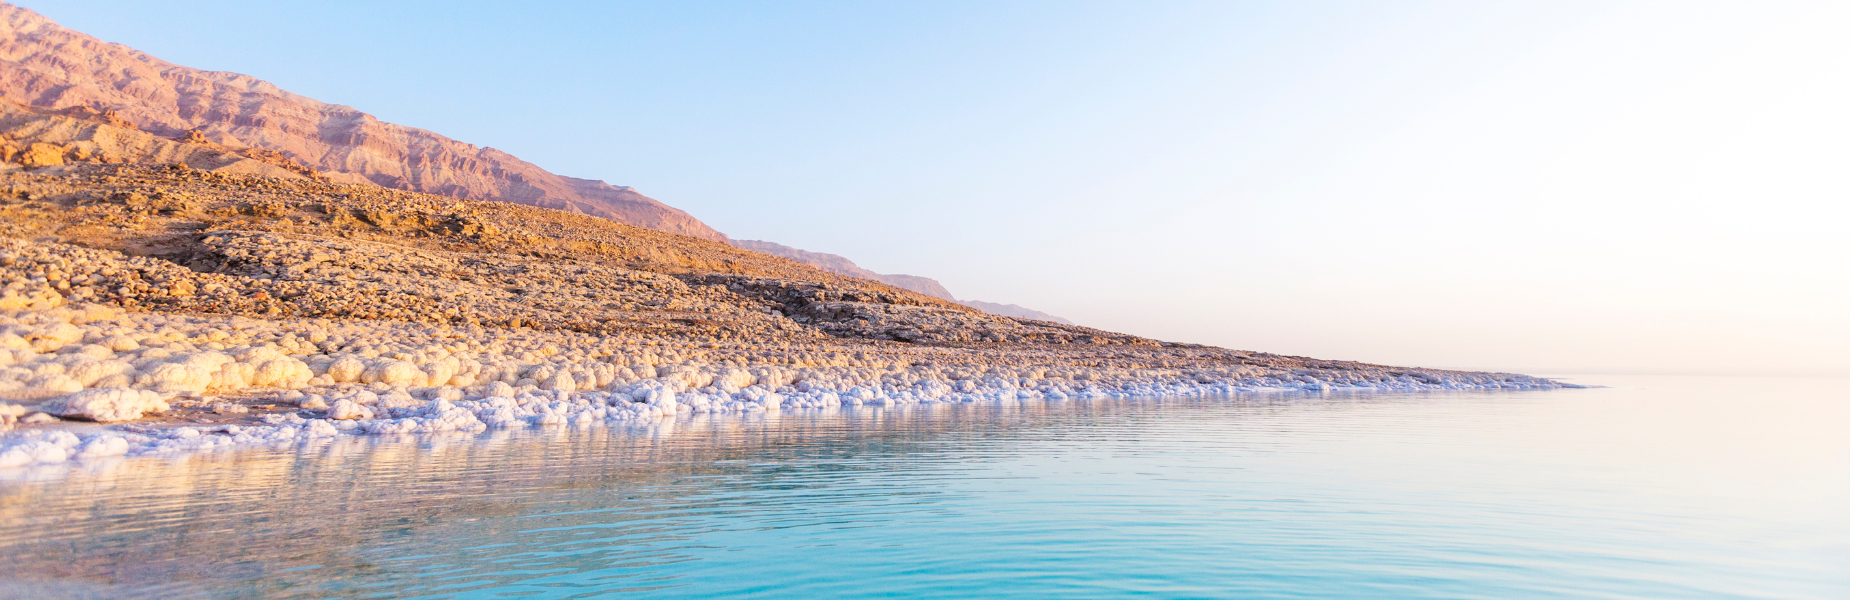 de kust van de dode zee met het droge  bergachtige landschap op de achtergrond